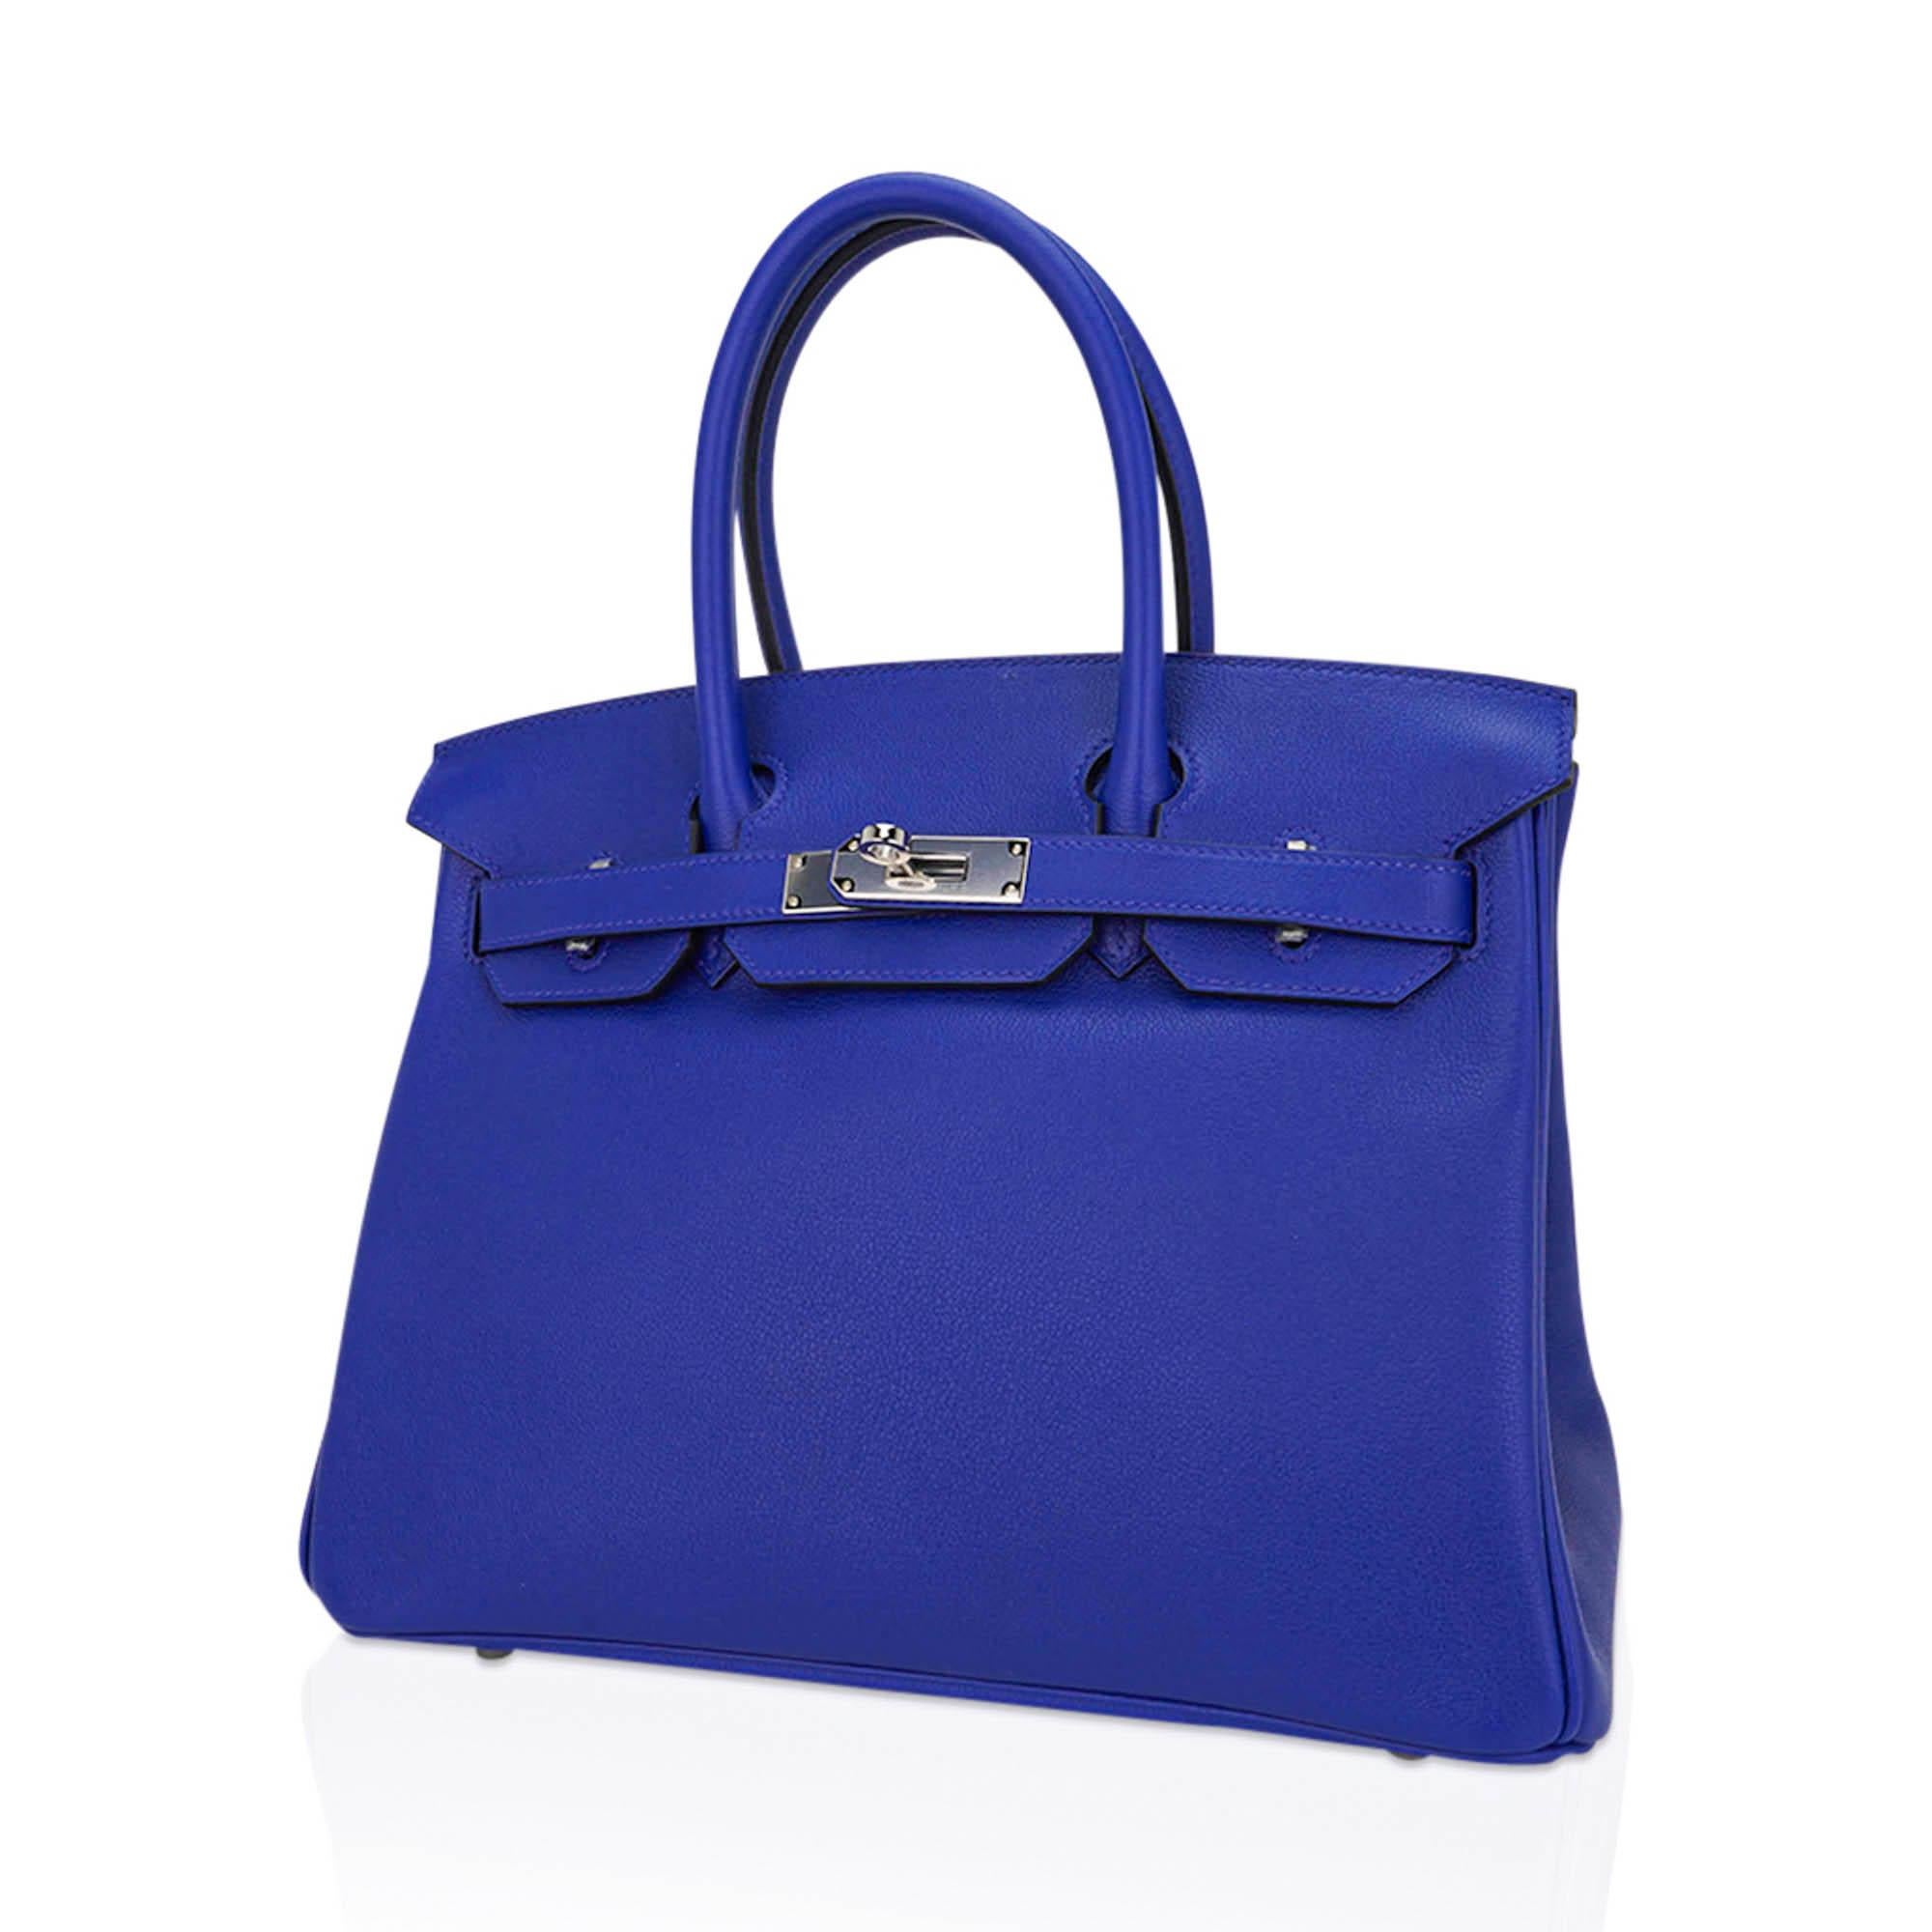 Hermes Birkin 30 Blue Electric Bag Palladium Hardware Novillo Leather In New Condition For Sale In Miami, FL